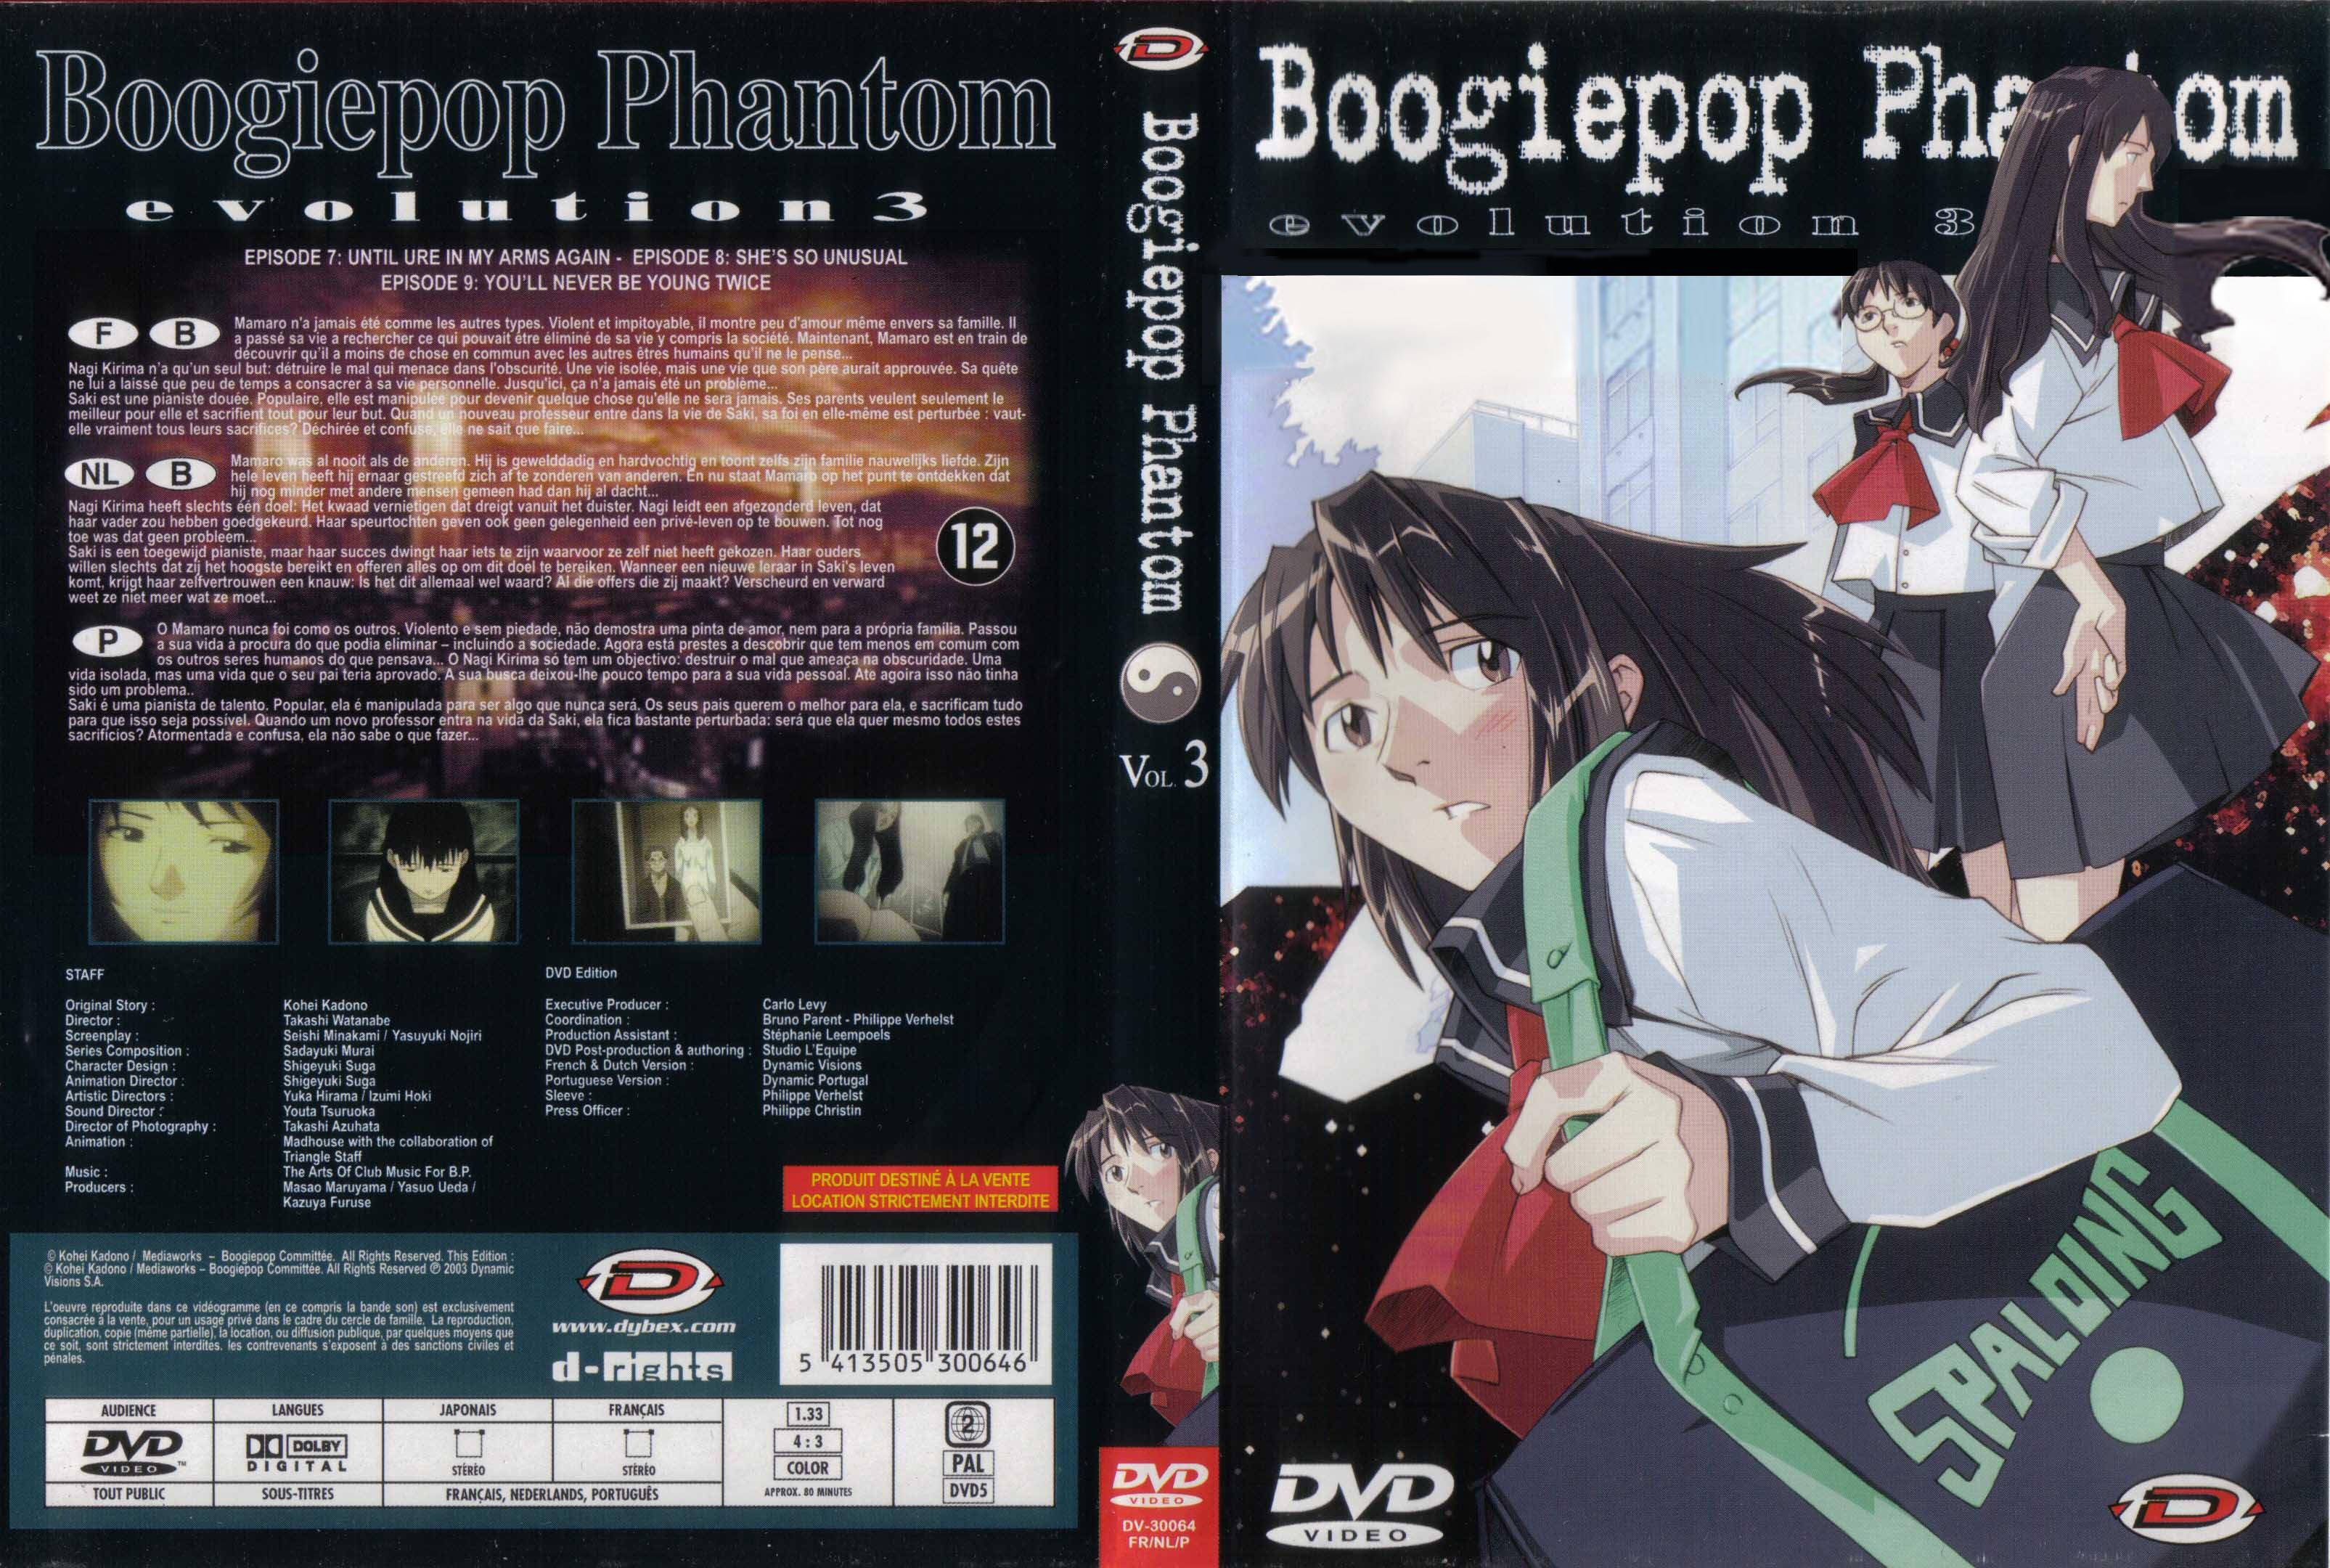 Jaquette DVD Boogiepop phantom vol 03